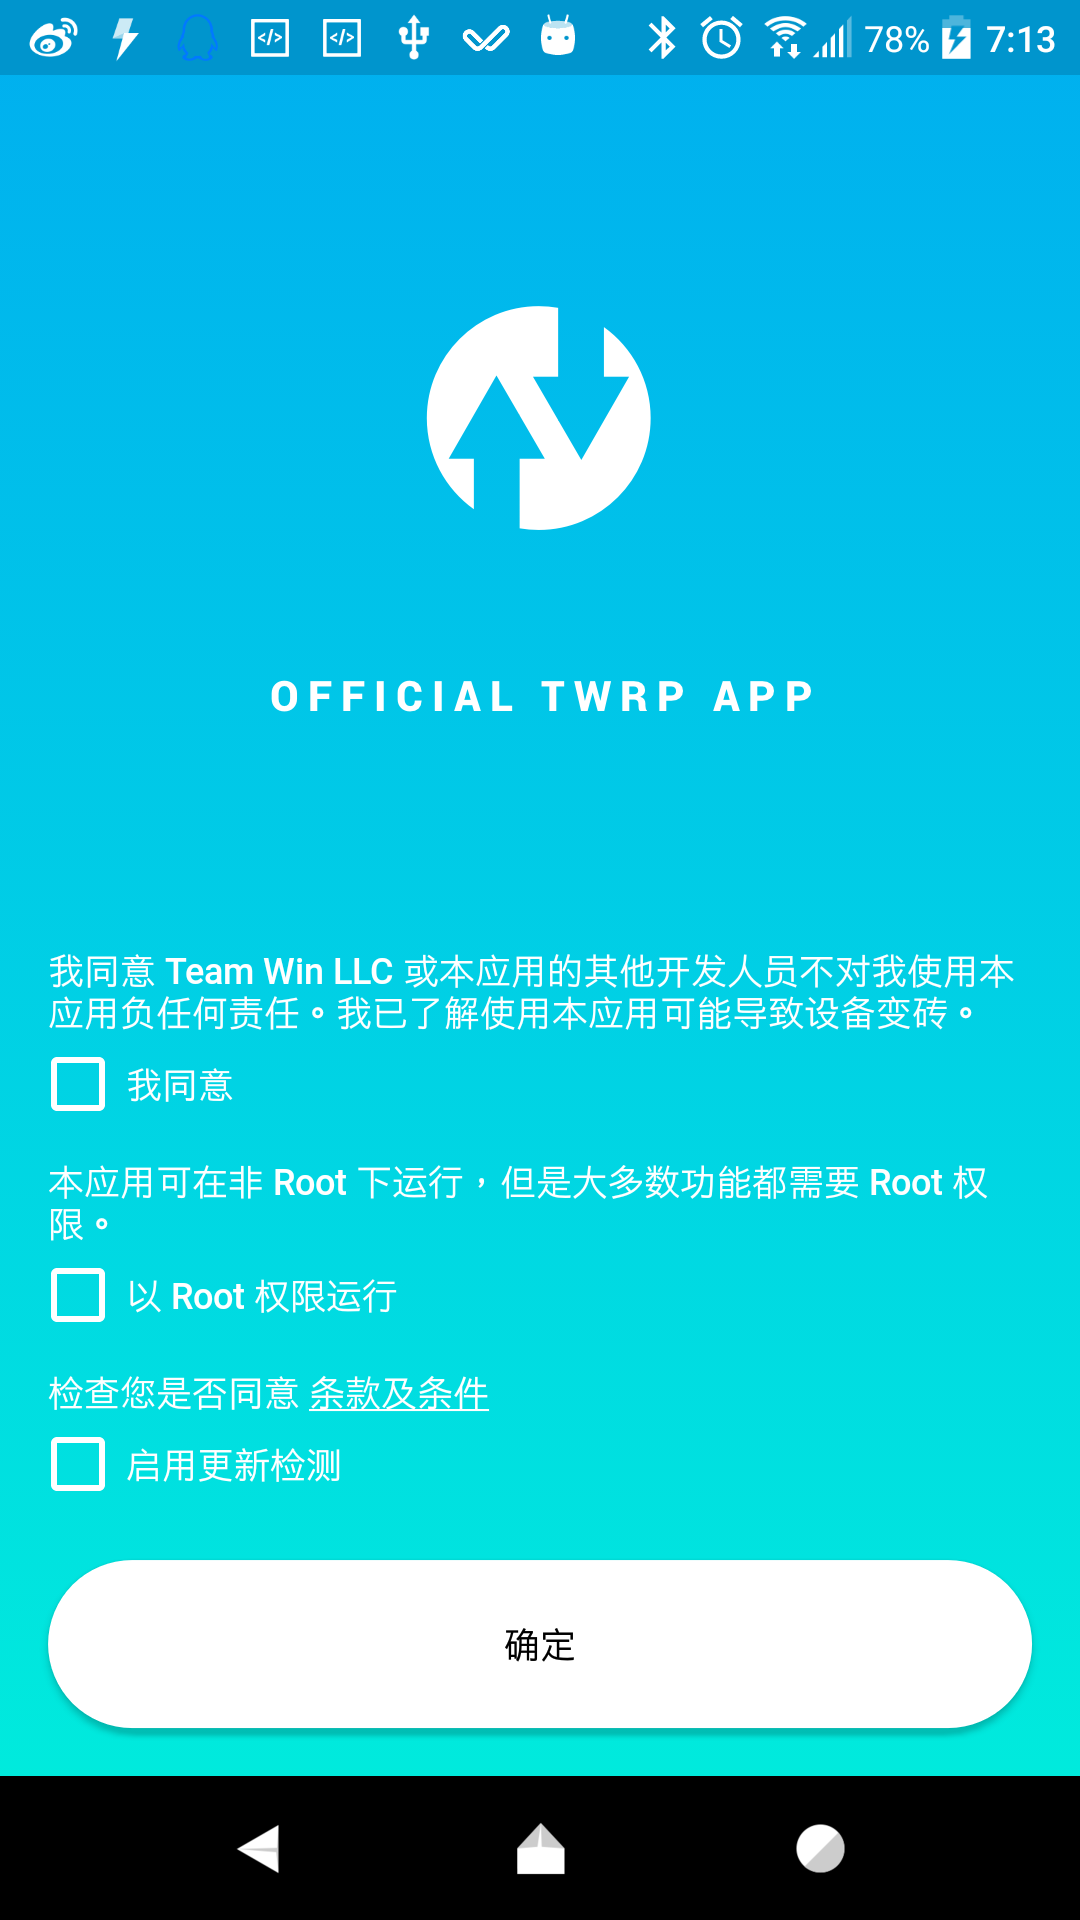 Official TWRP App汉化版安卓版下载v1.21